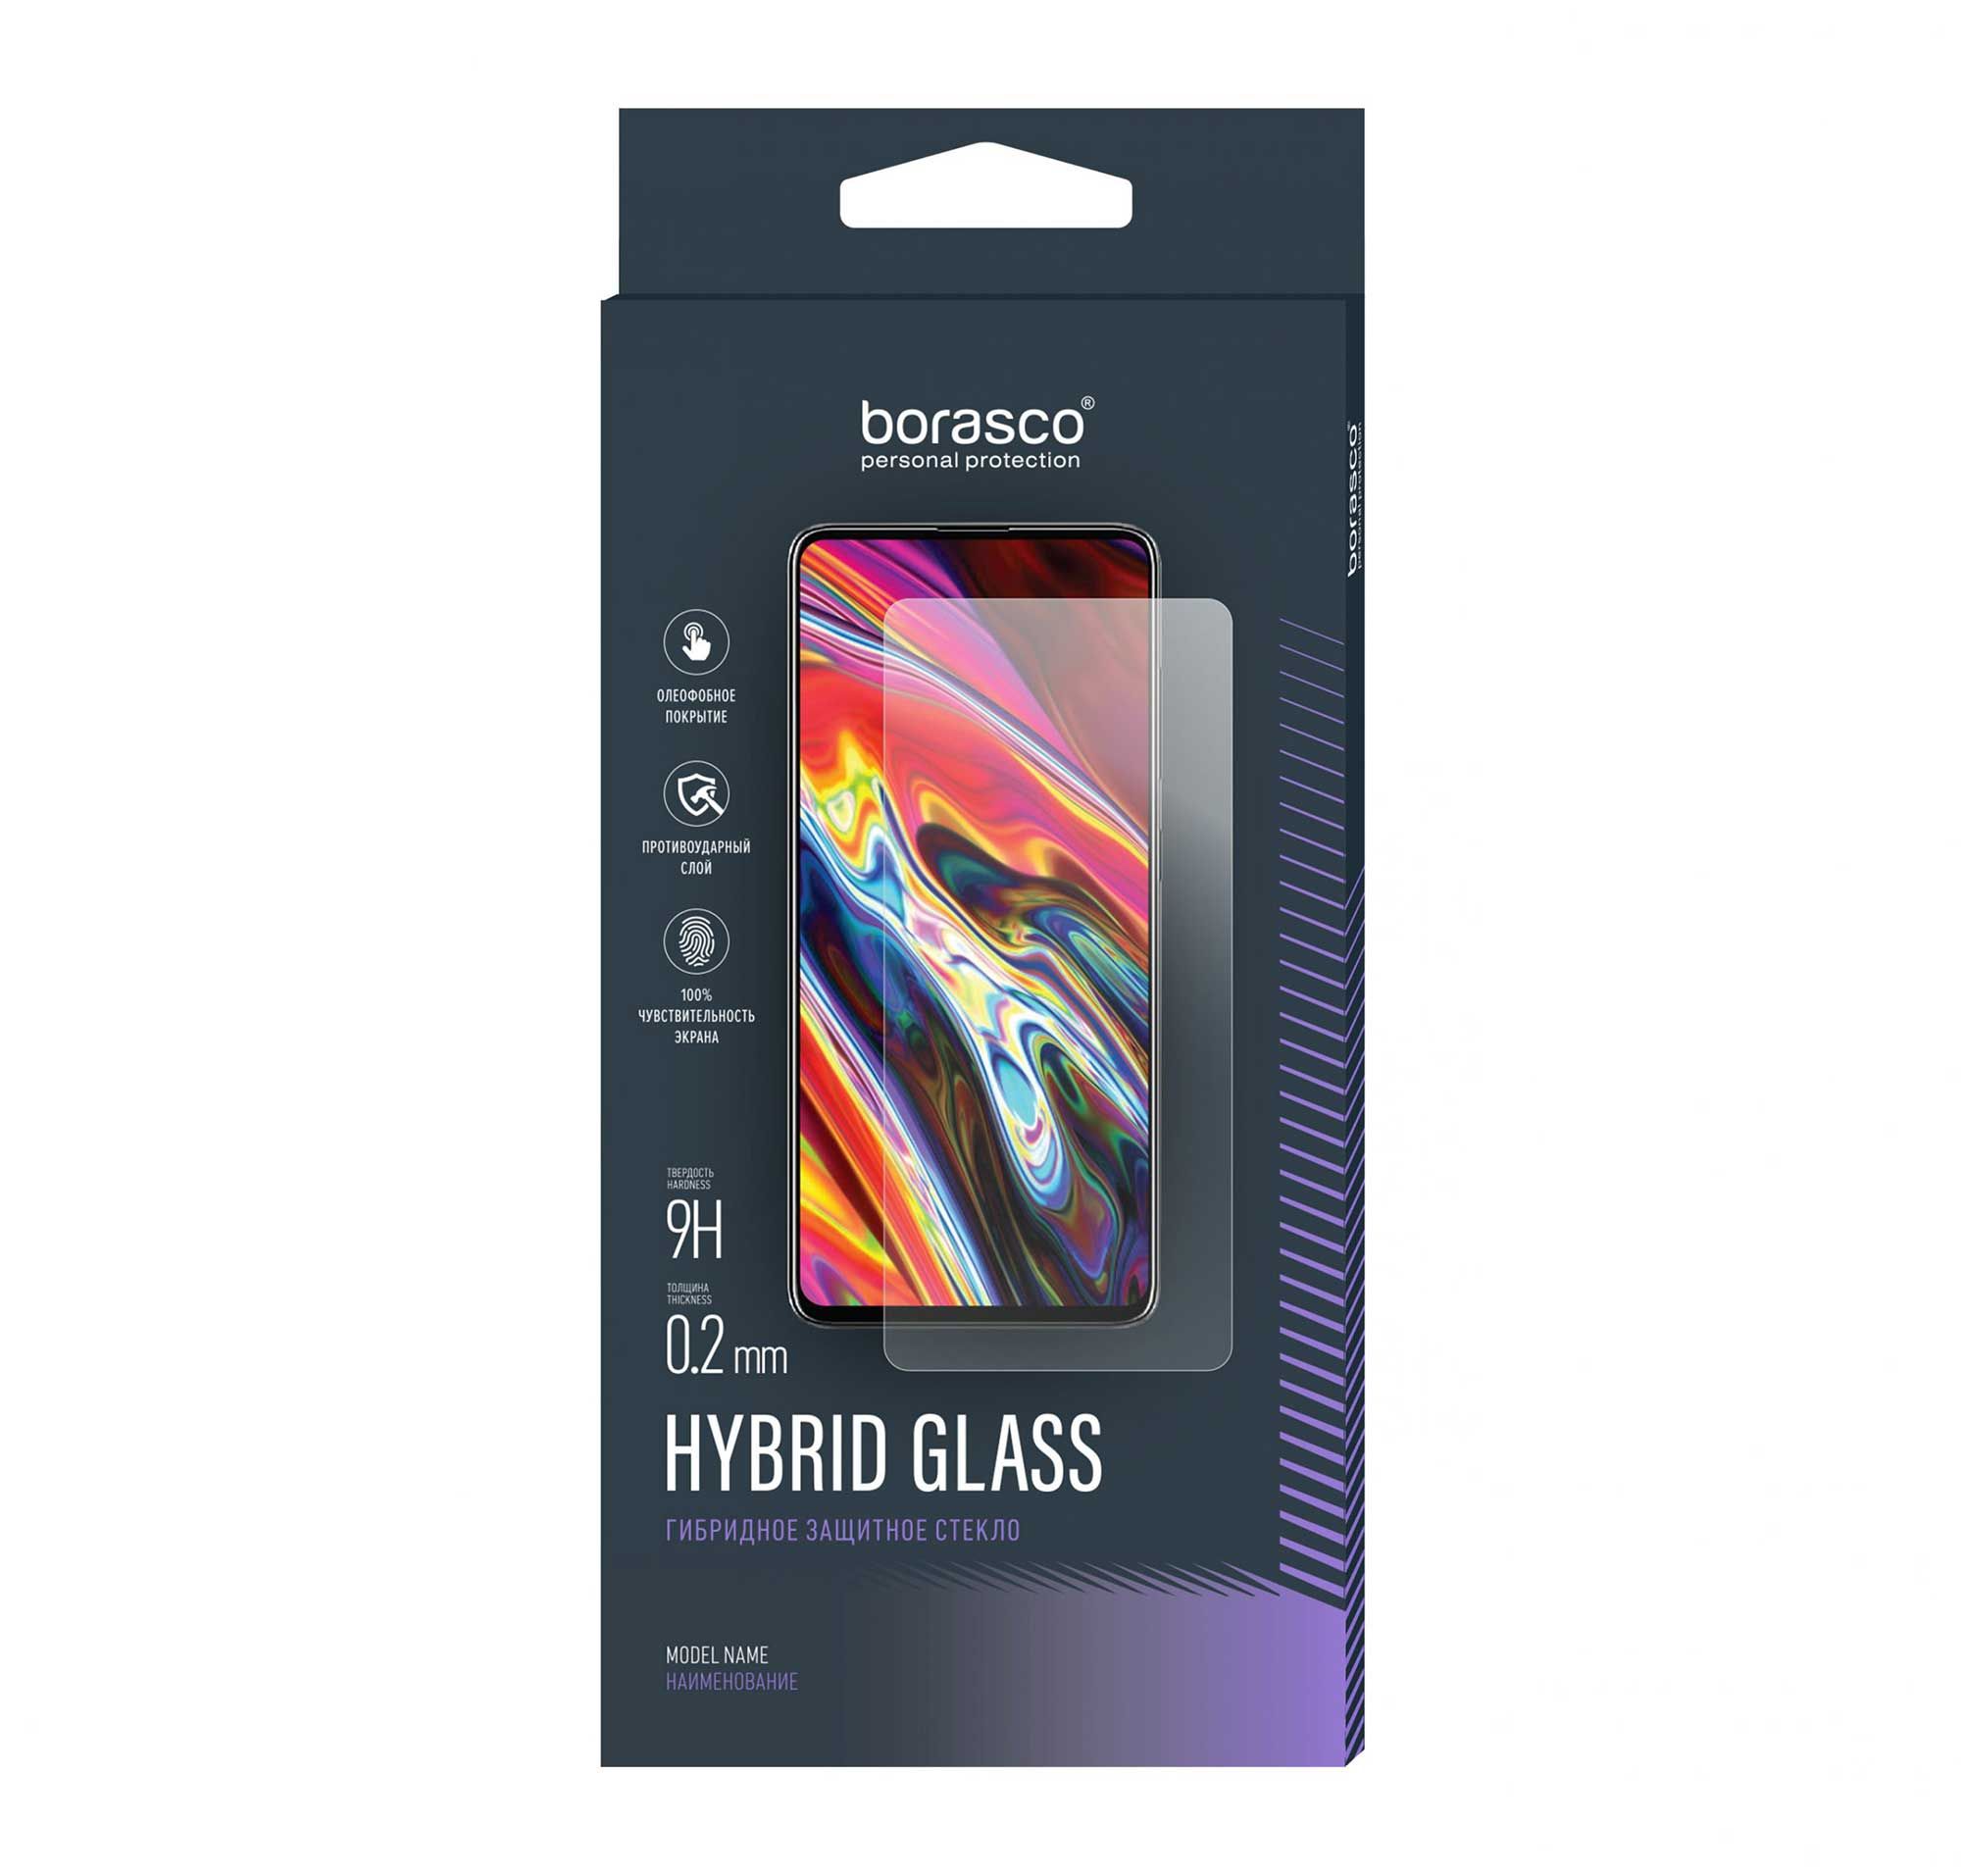 Защитное стекло Hybrid Glass для Asus Rog Phone 7 чехол mypads астронавт с звездочкой для asus rog phone 6 pro задняя панель накладка бампер